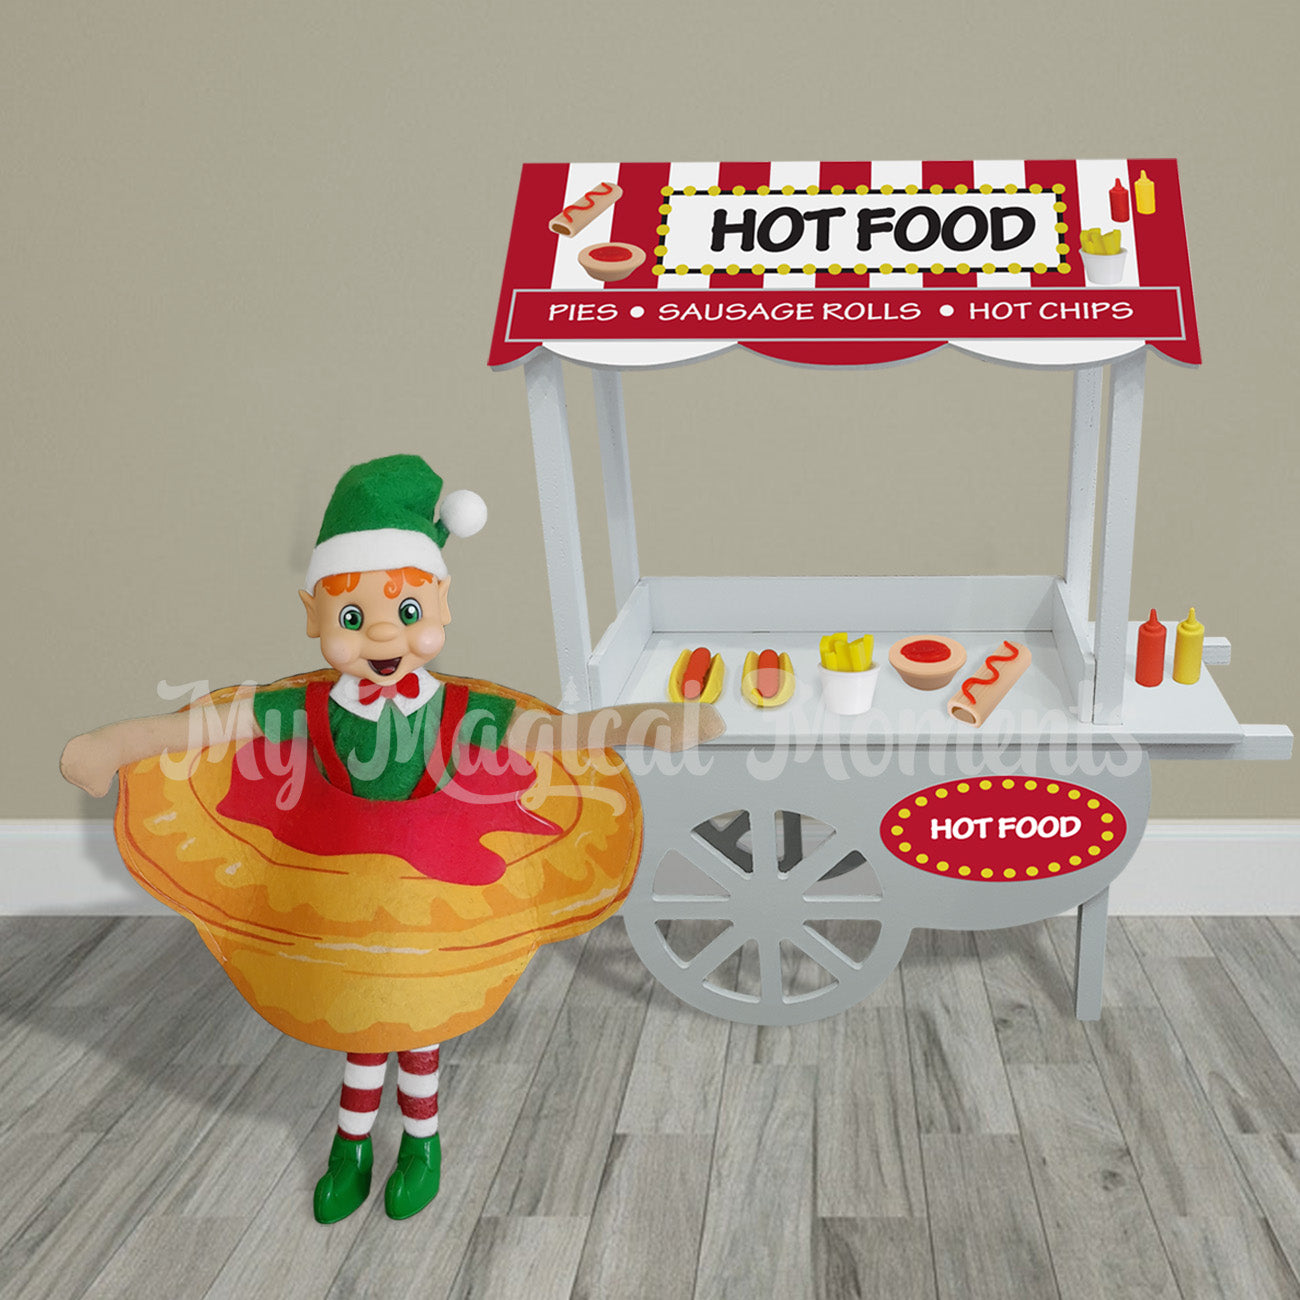 Elf dressed as a pie selling hot food